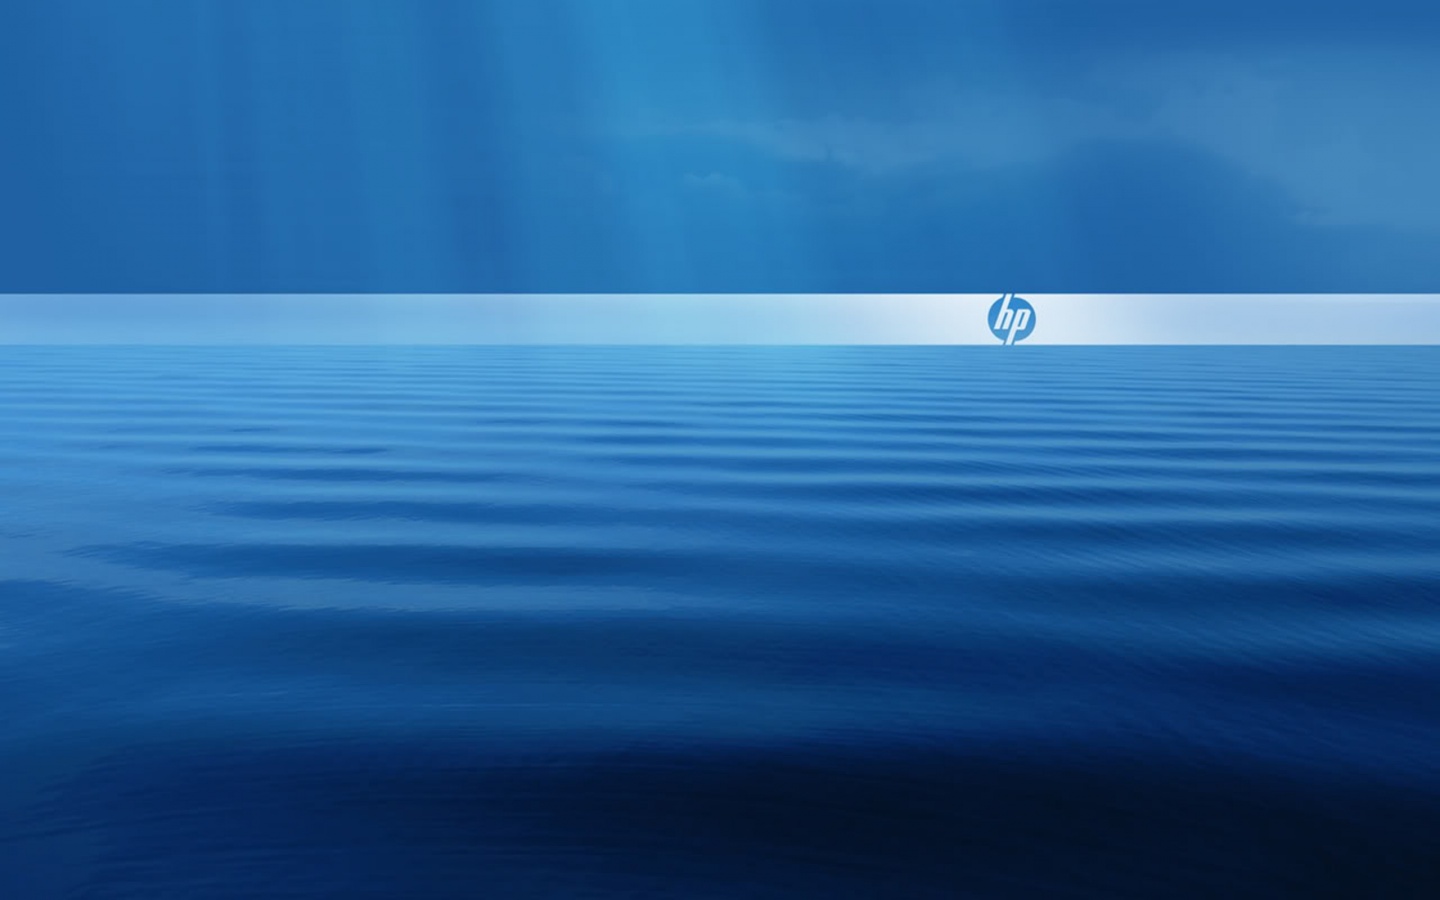 Hewlett Packard Desktop Backgrounds Wallpaper